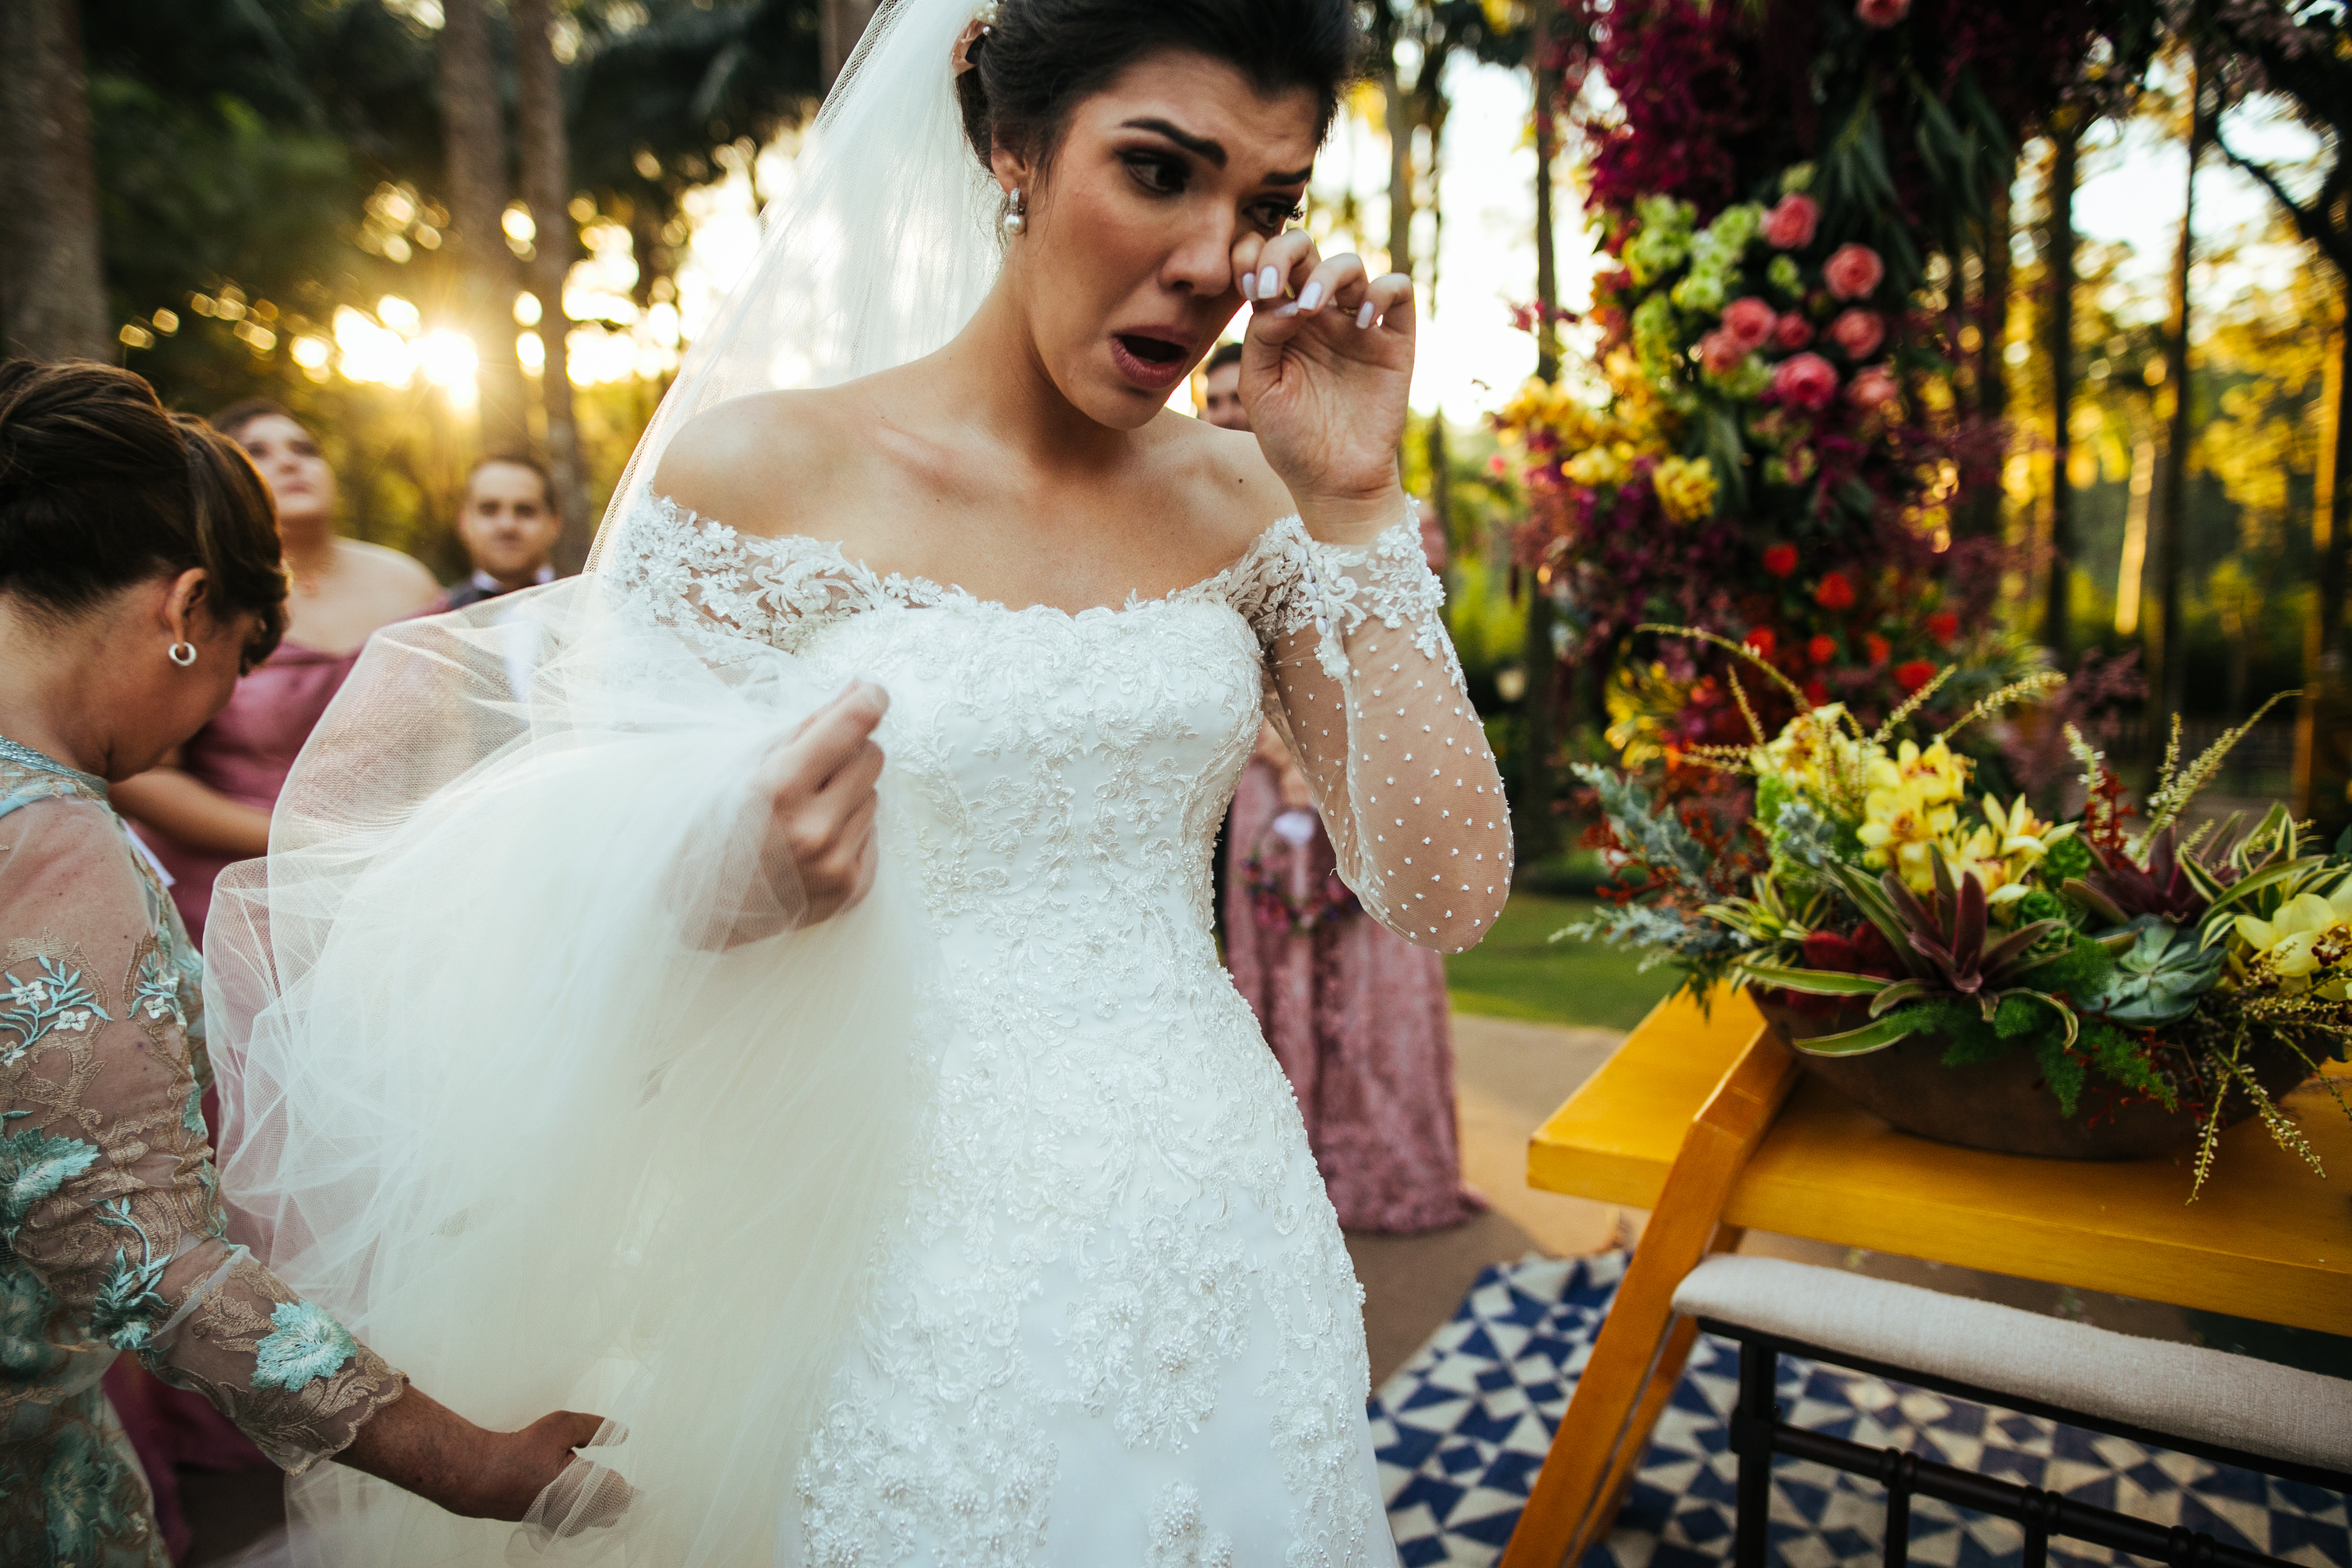 Una novia llorando en el altar | Fuente: Getty Images